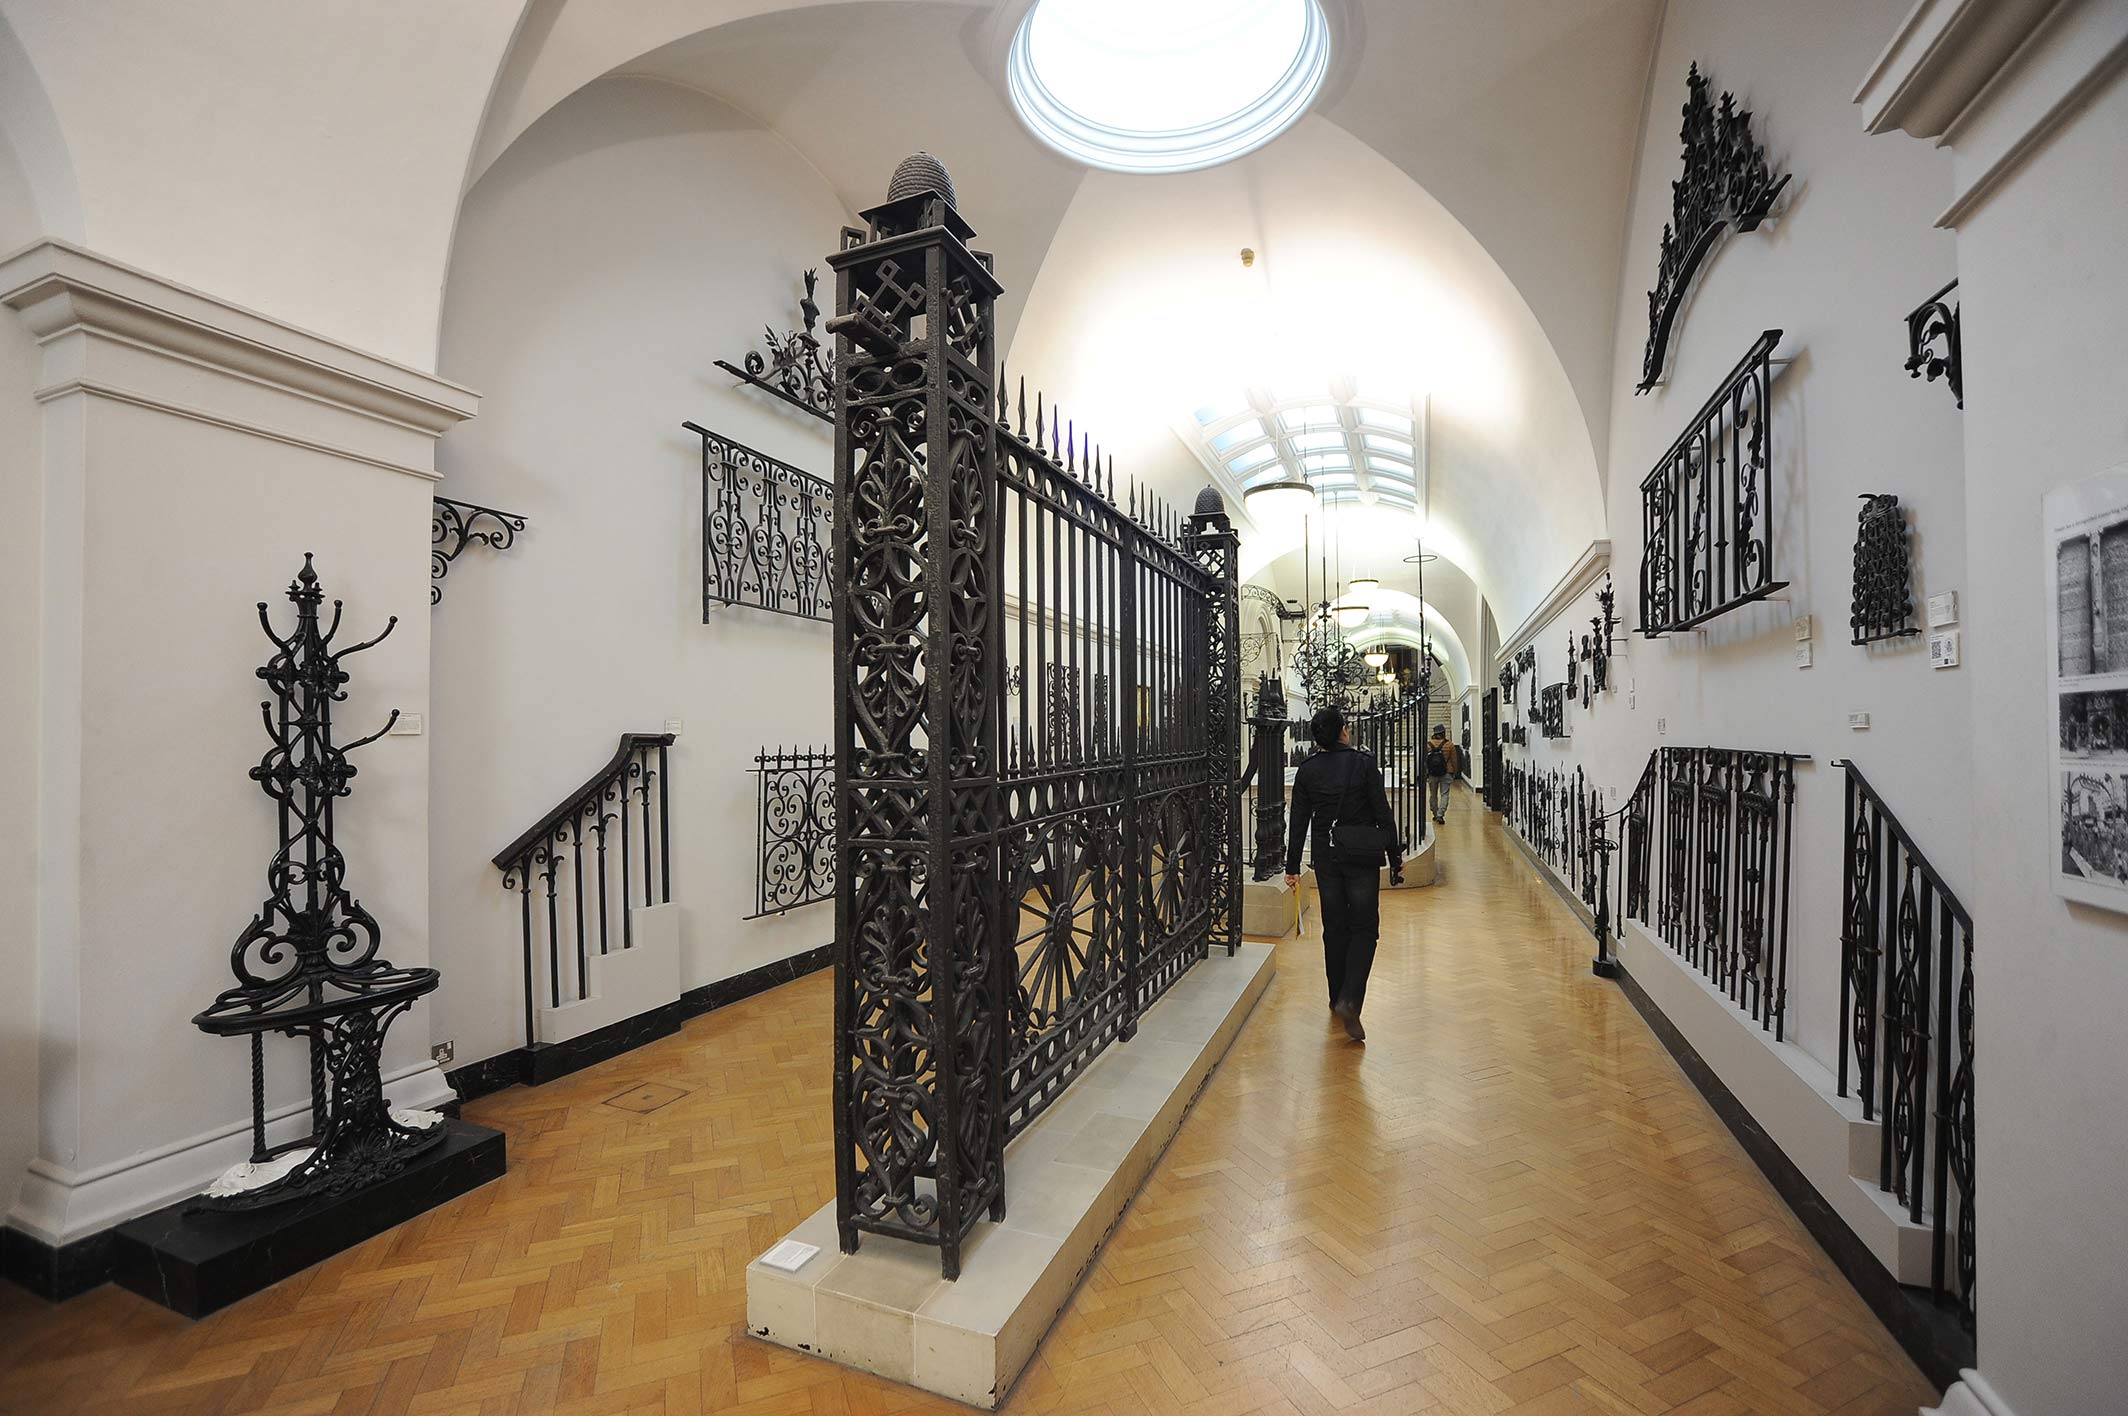 Bảo tàng Victoria & Albert là nơi lưu giữ bộ sưu tập lớn nhất thế giới về những sản phẩm hoa văn từ sắt